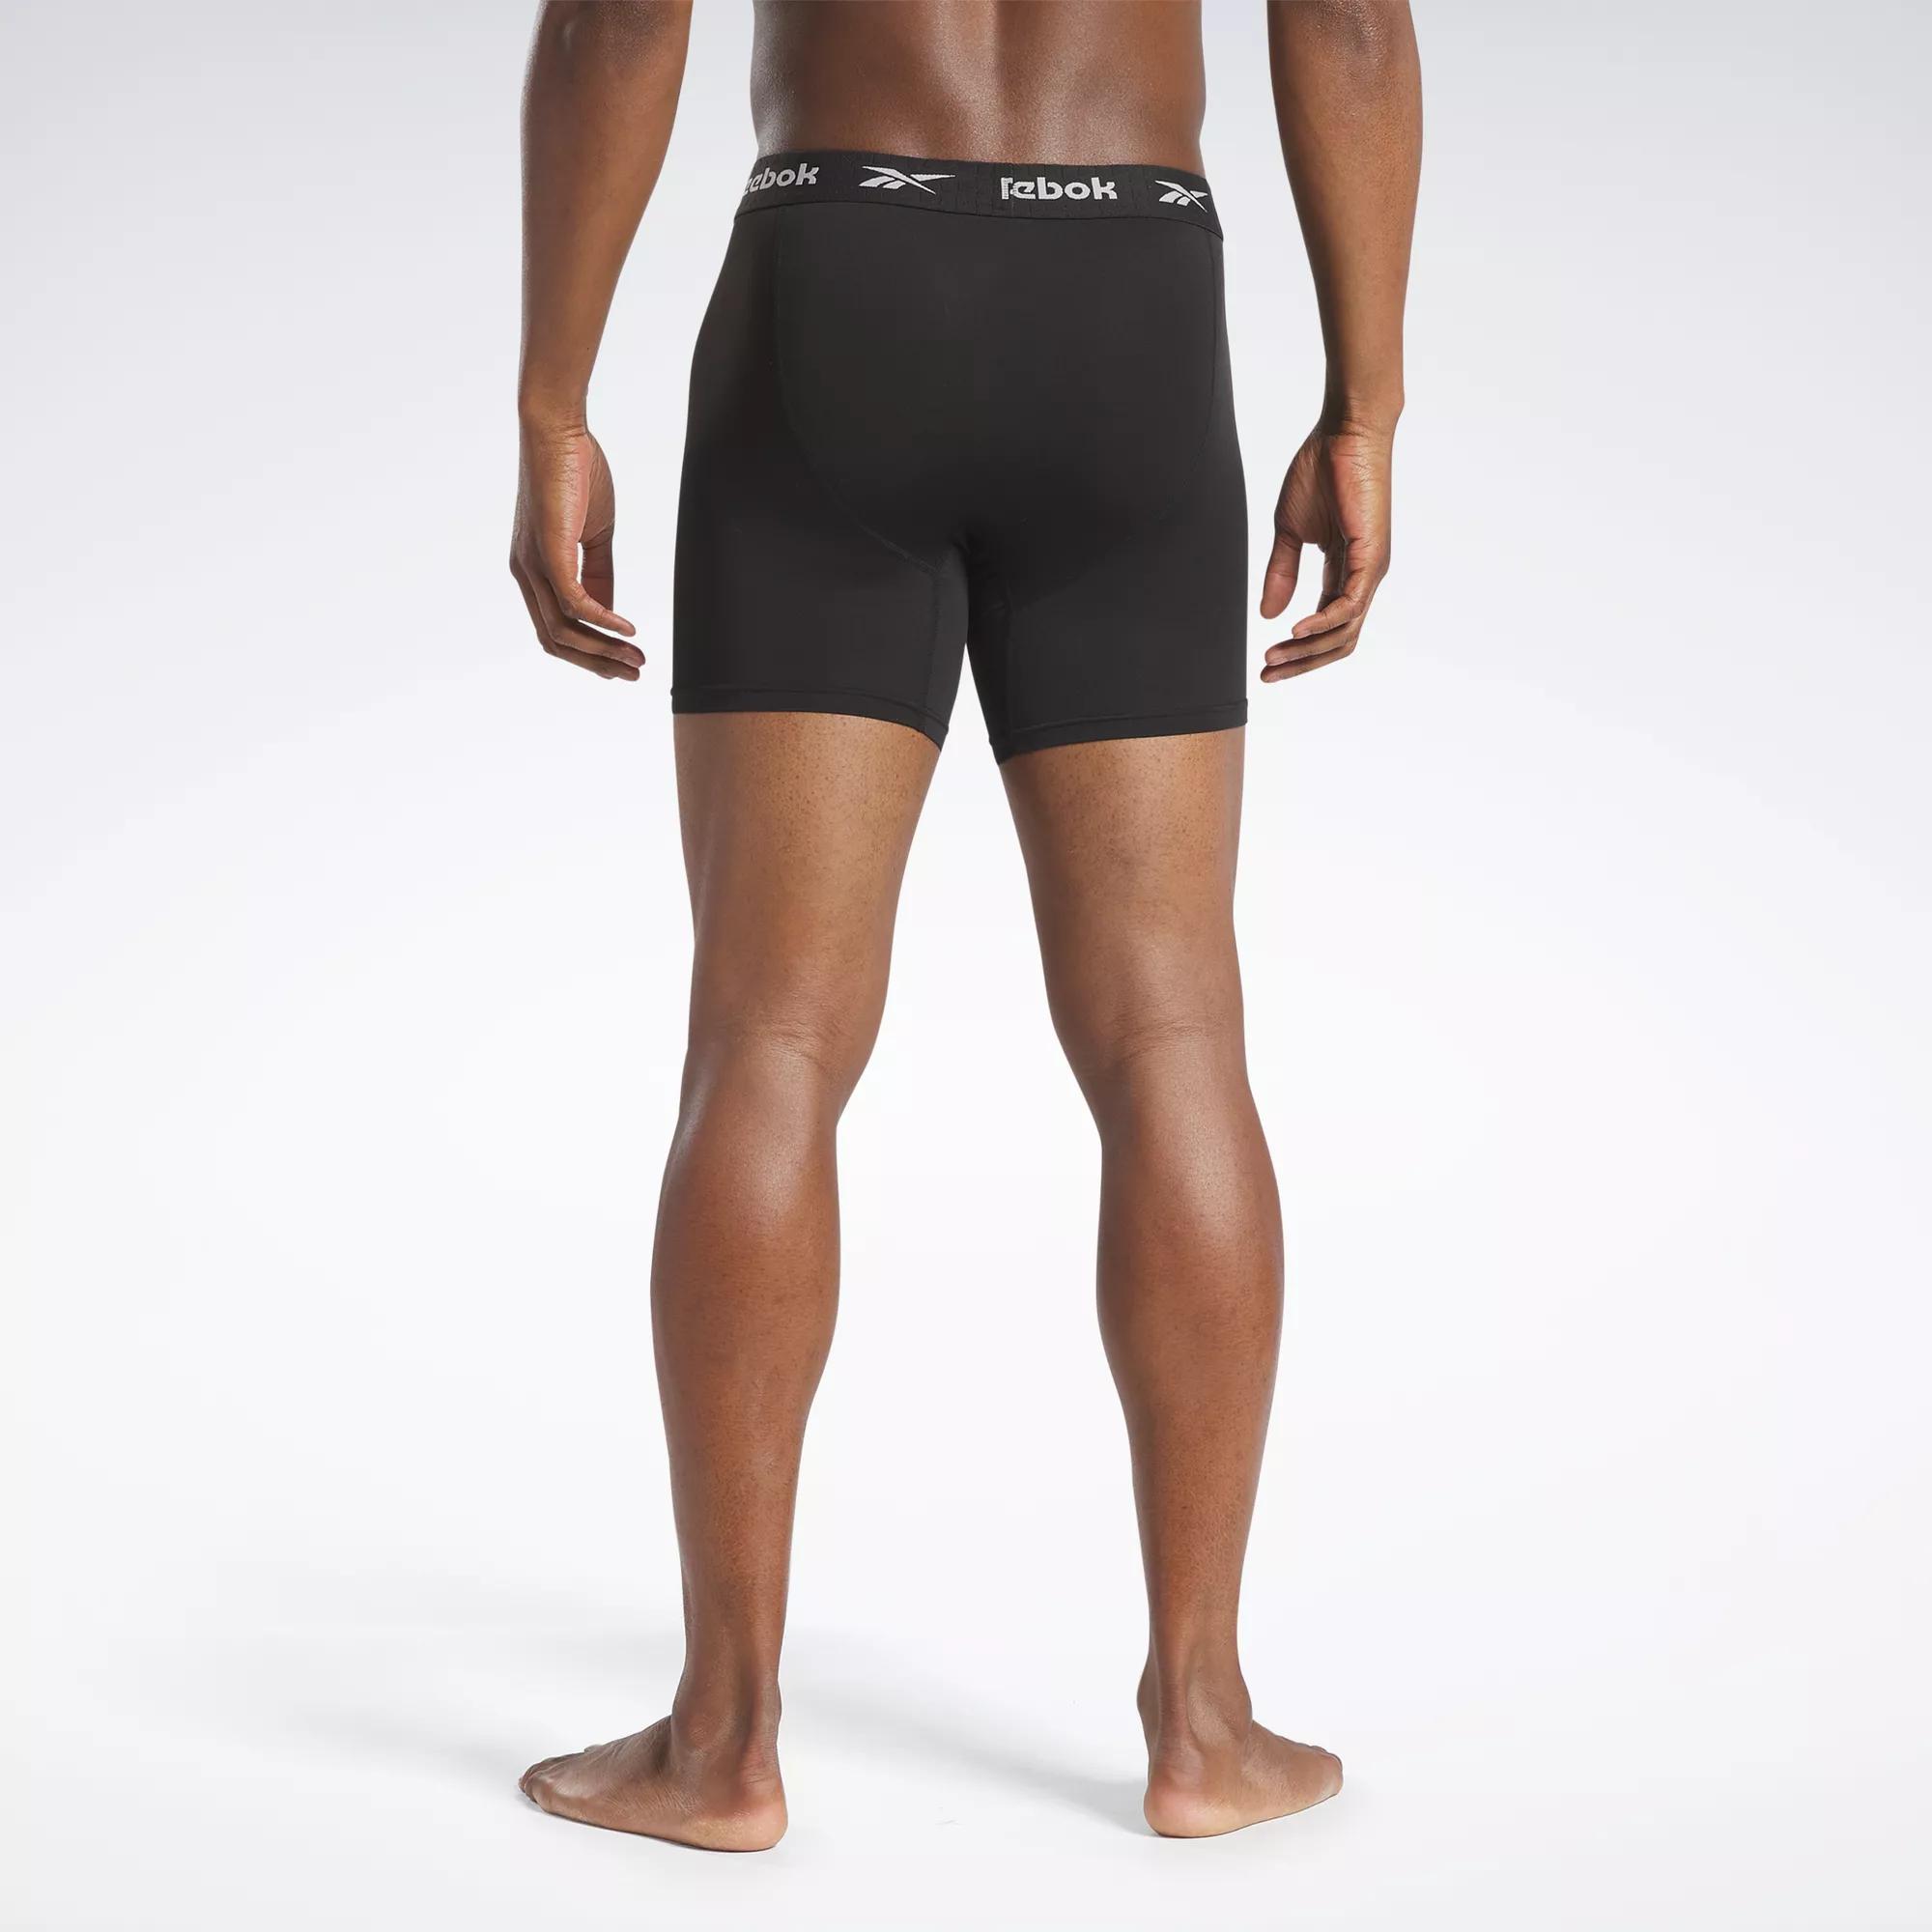 Reebok Men's Underwear - Performance Boxer Briefs (8 Pack), Size